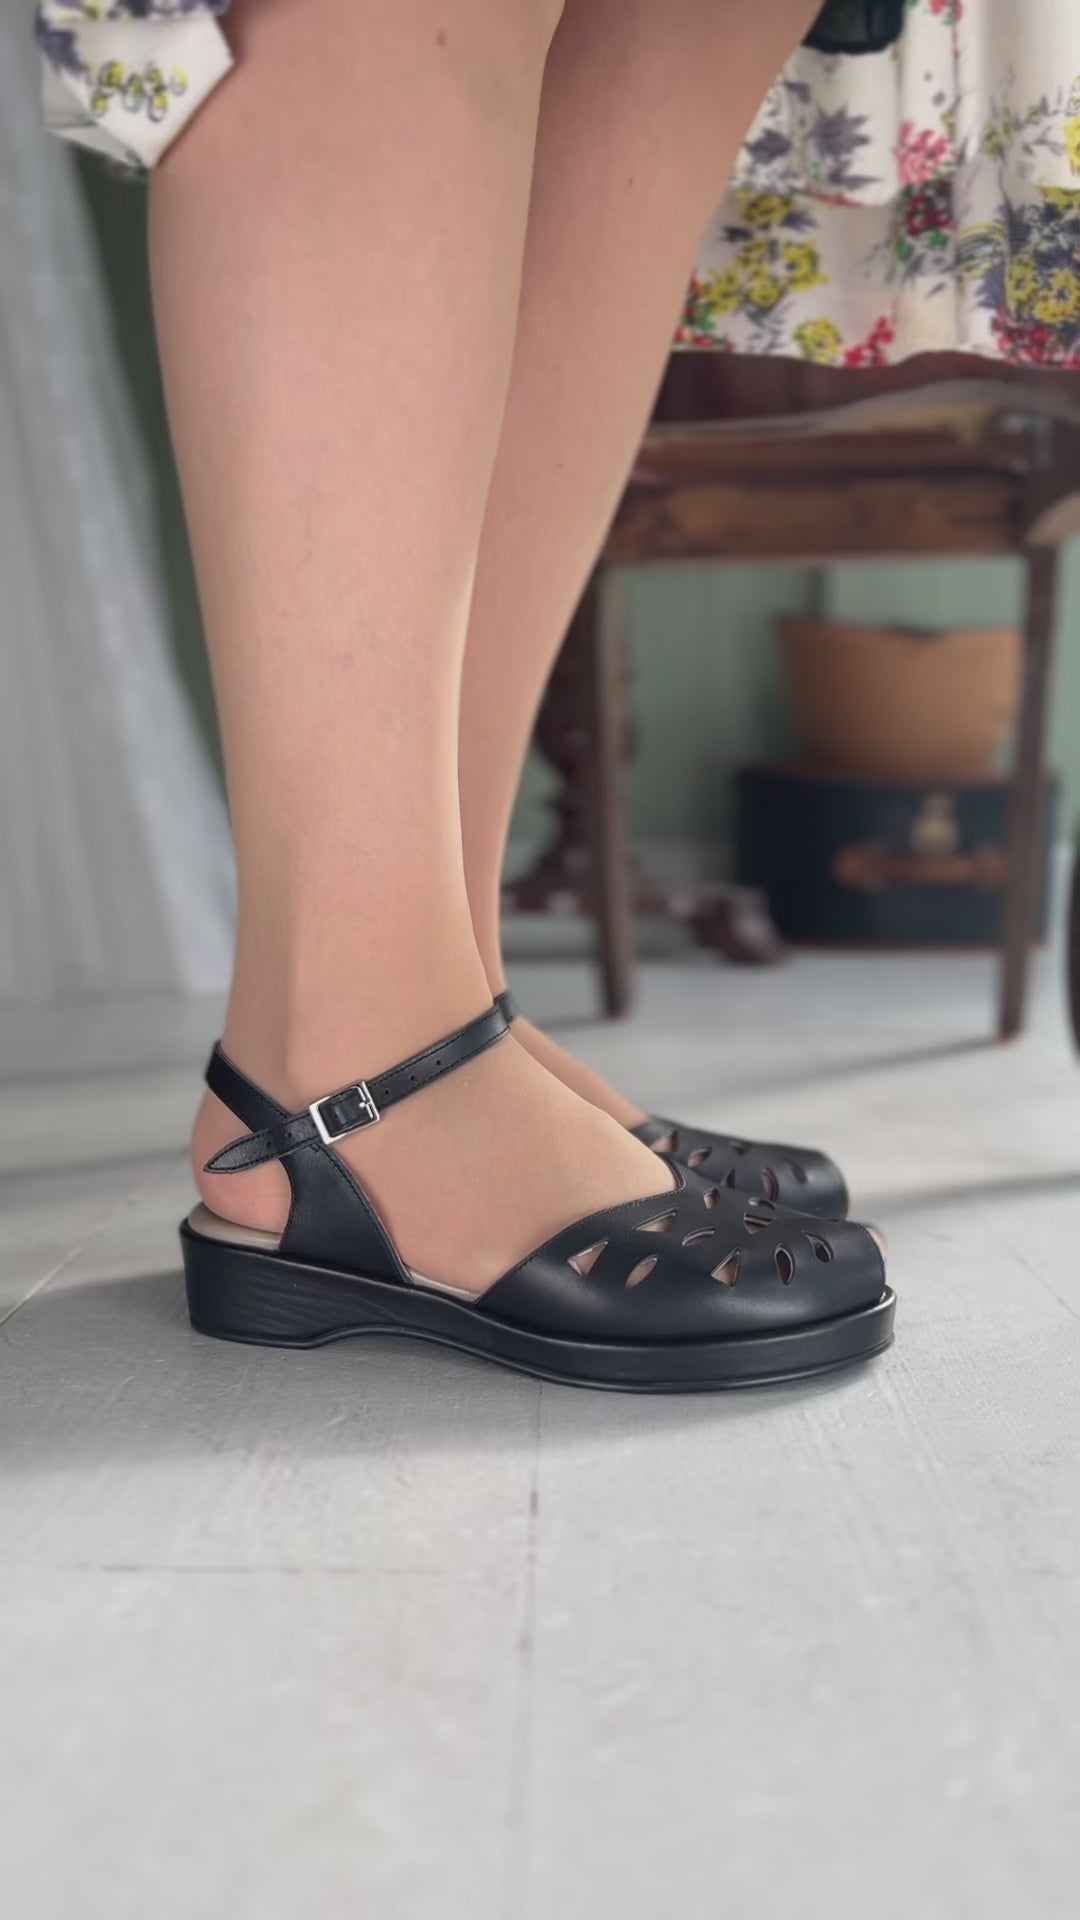 40' er / 50'er style sandal / wedge - Sort - Sidse